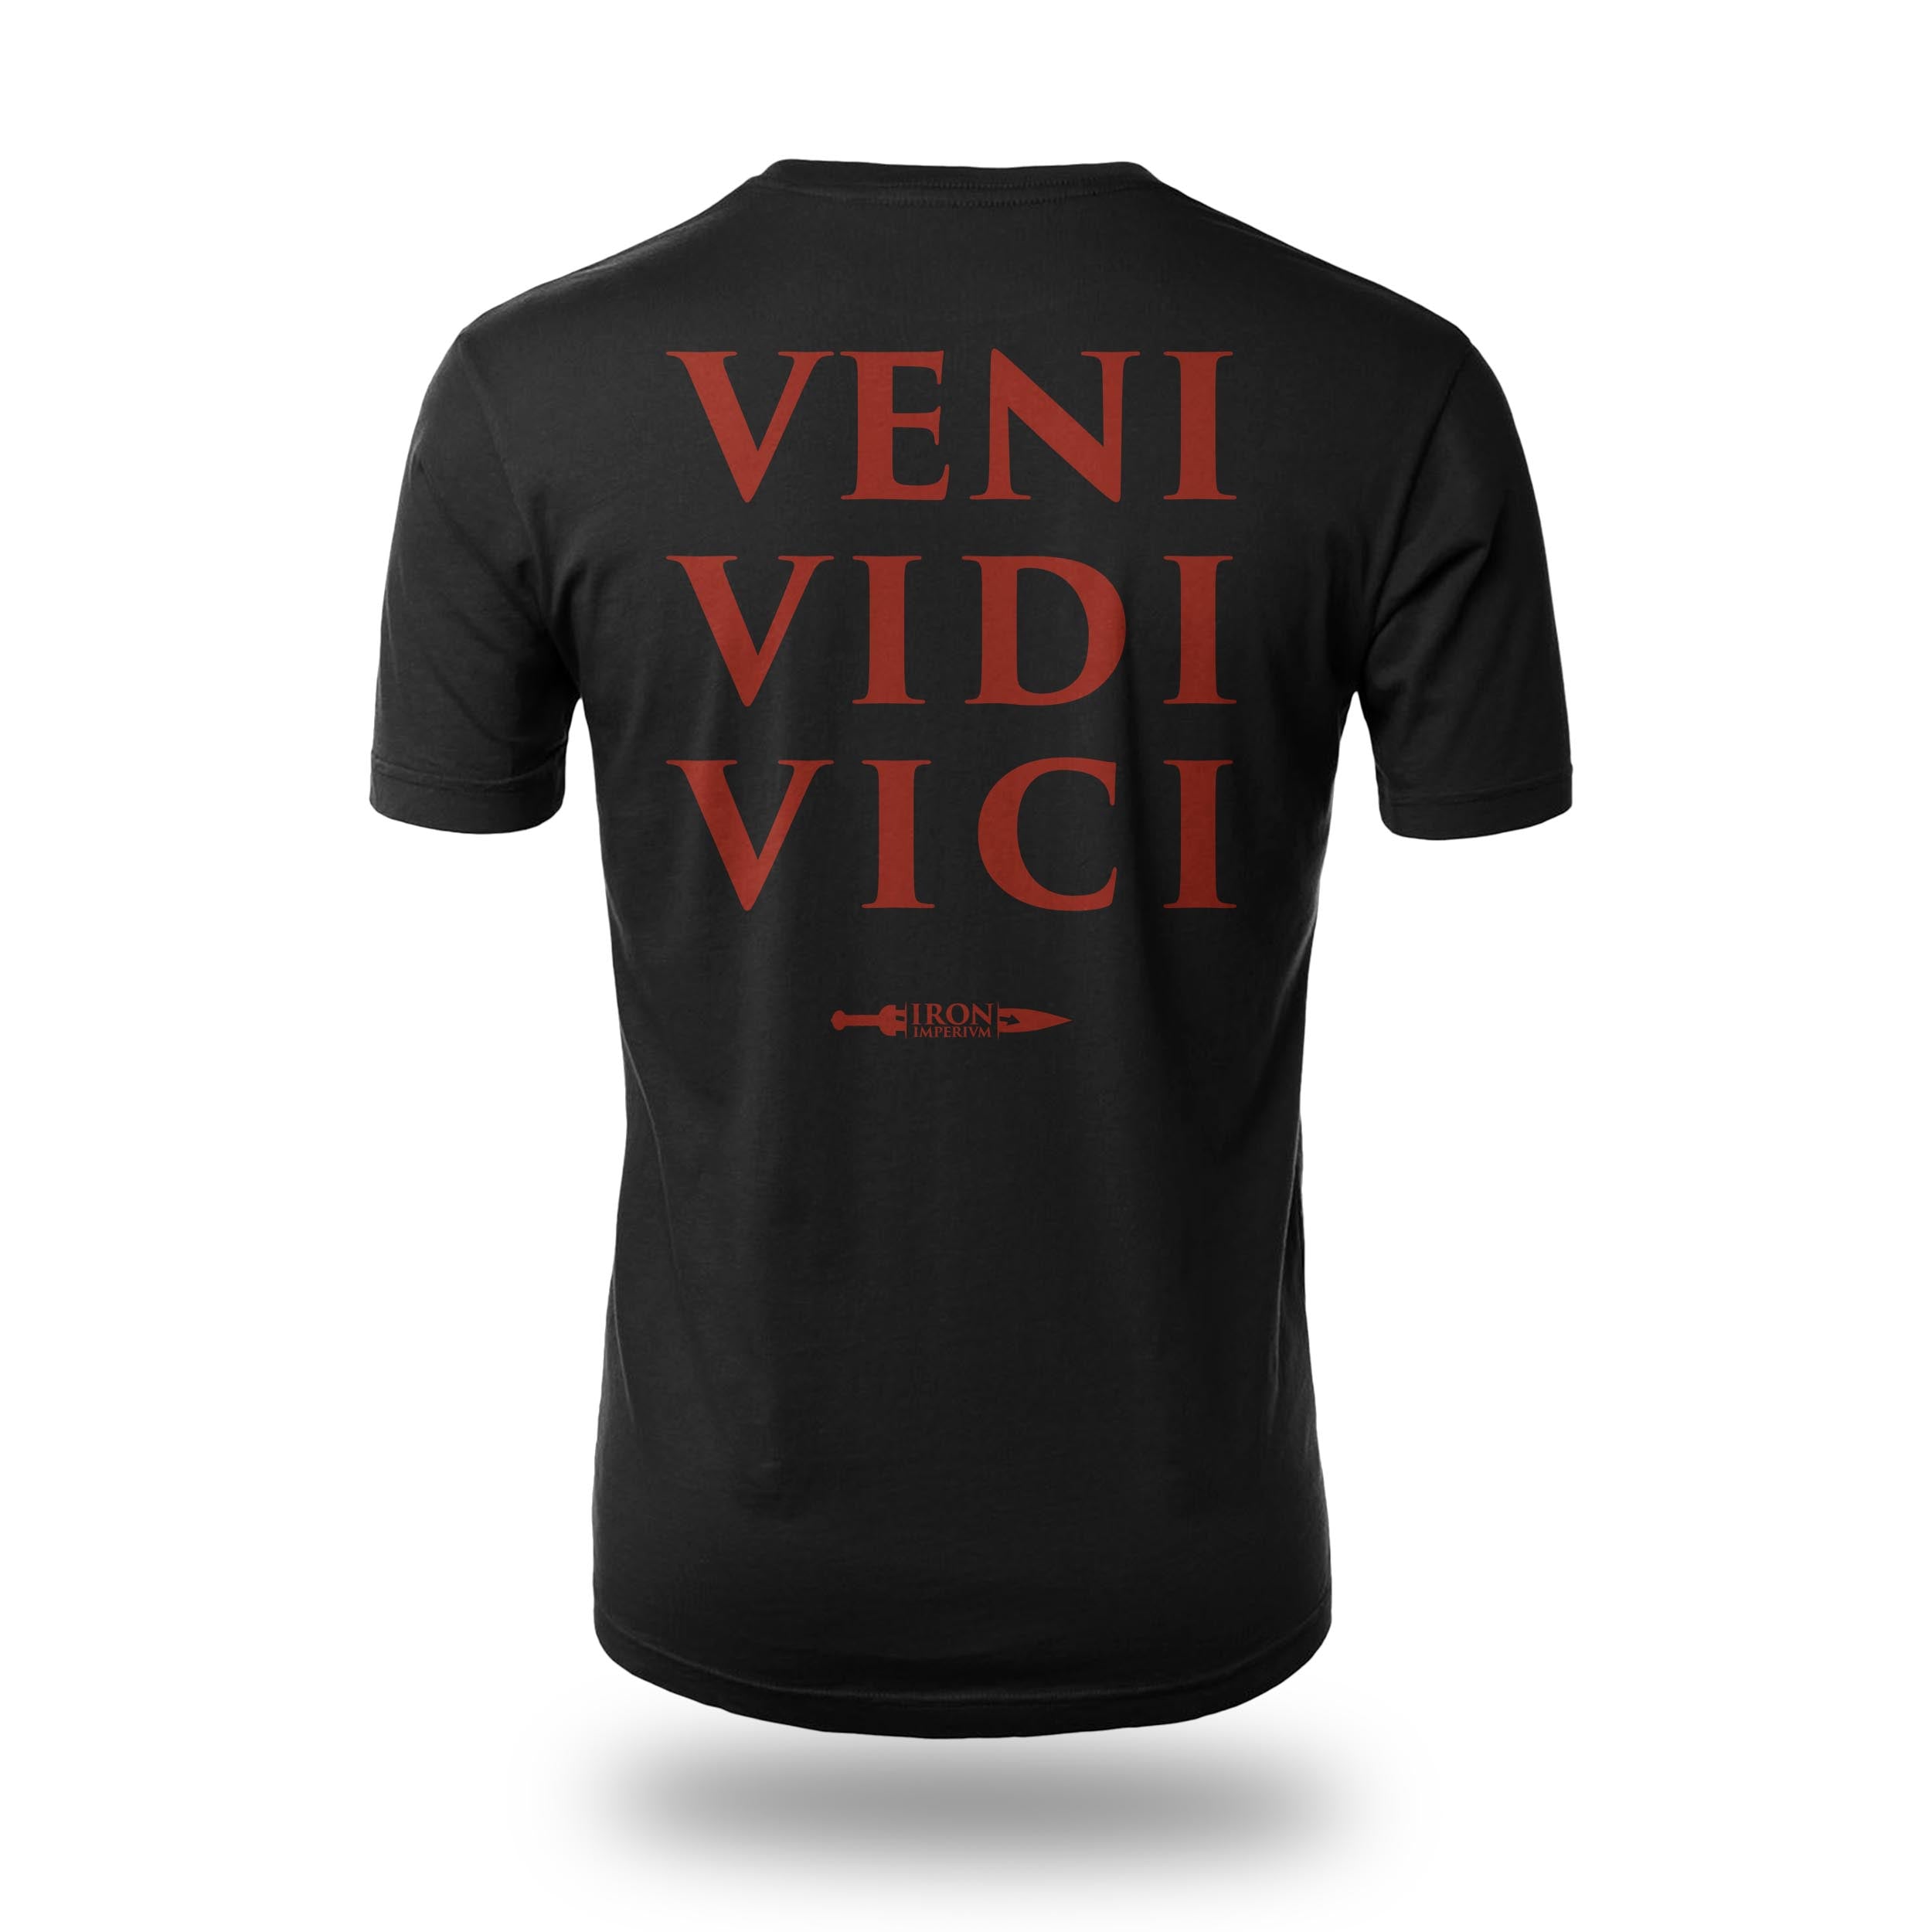 Immortal Praetorian Veni Vidi Vici black t-shirt left chest dark red design